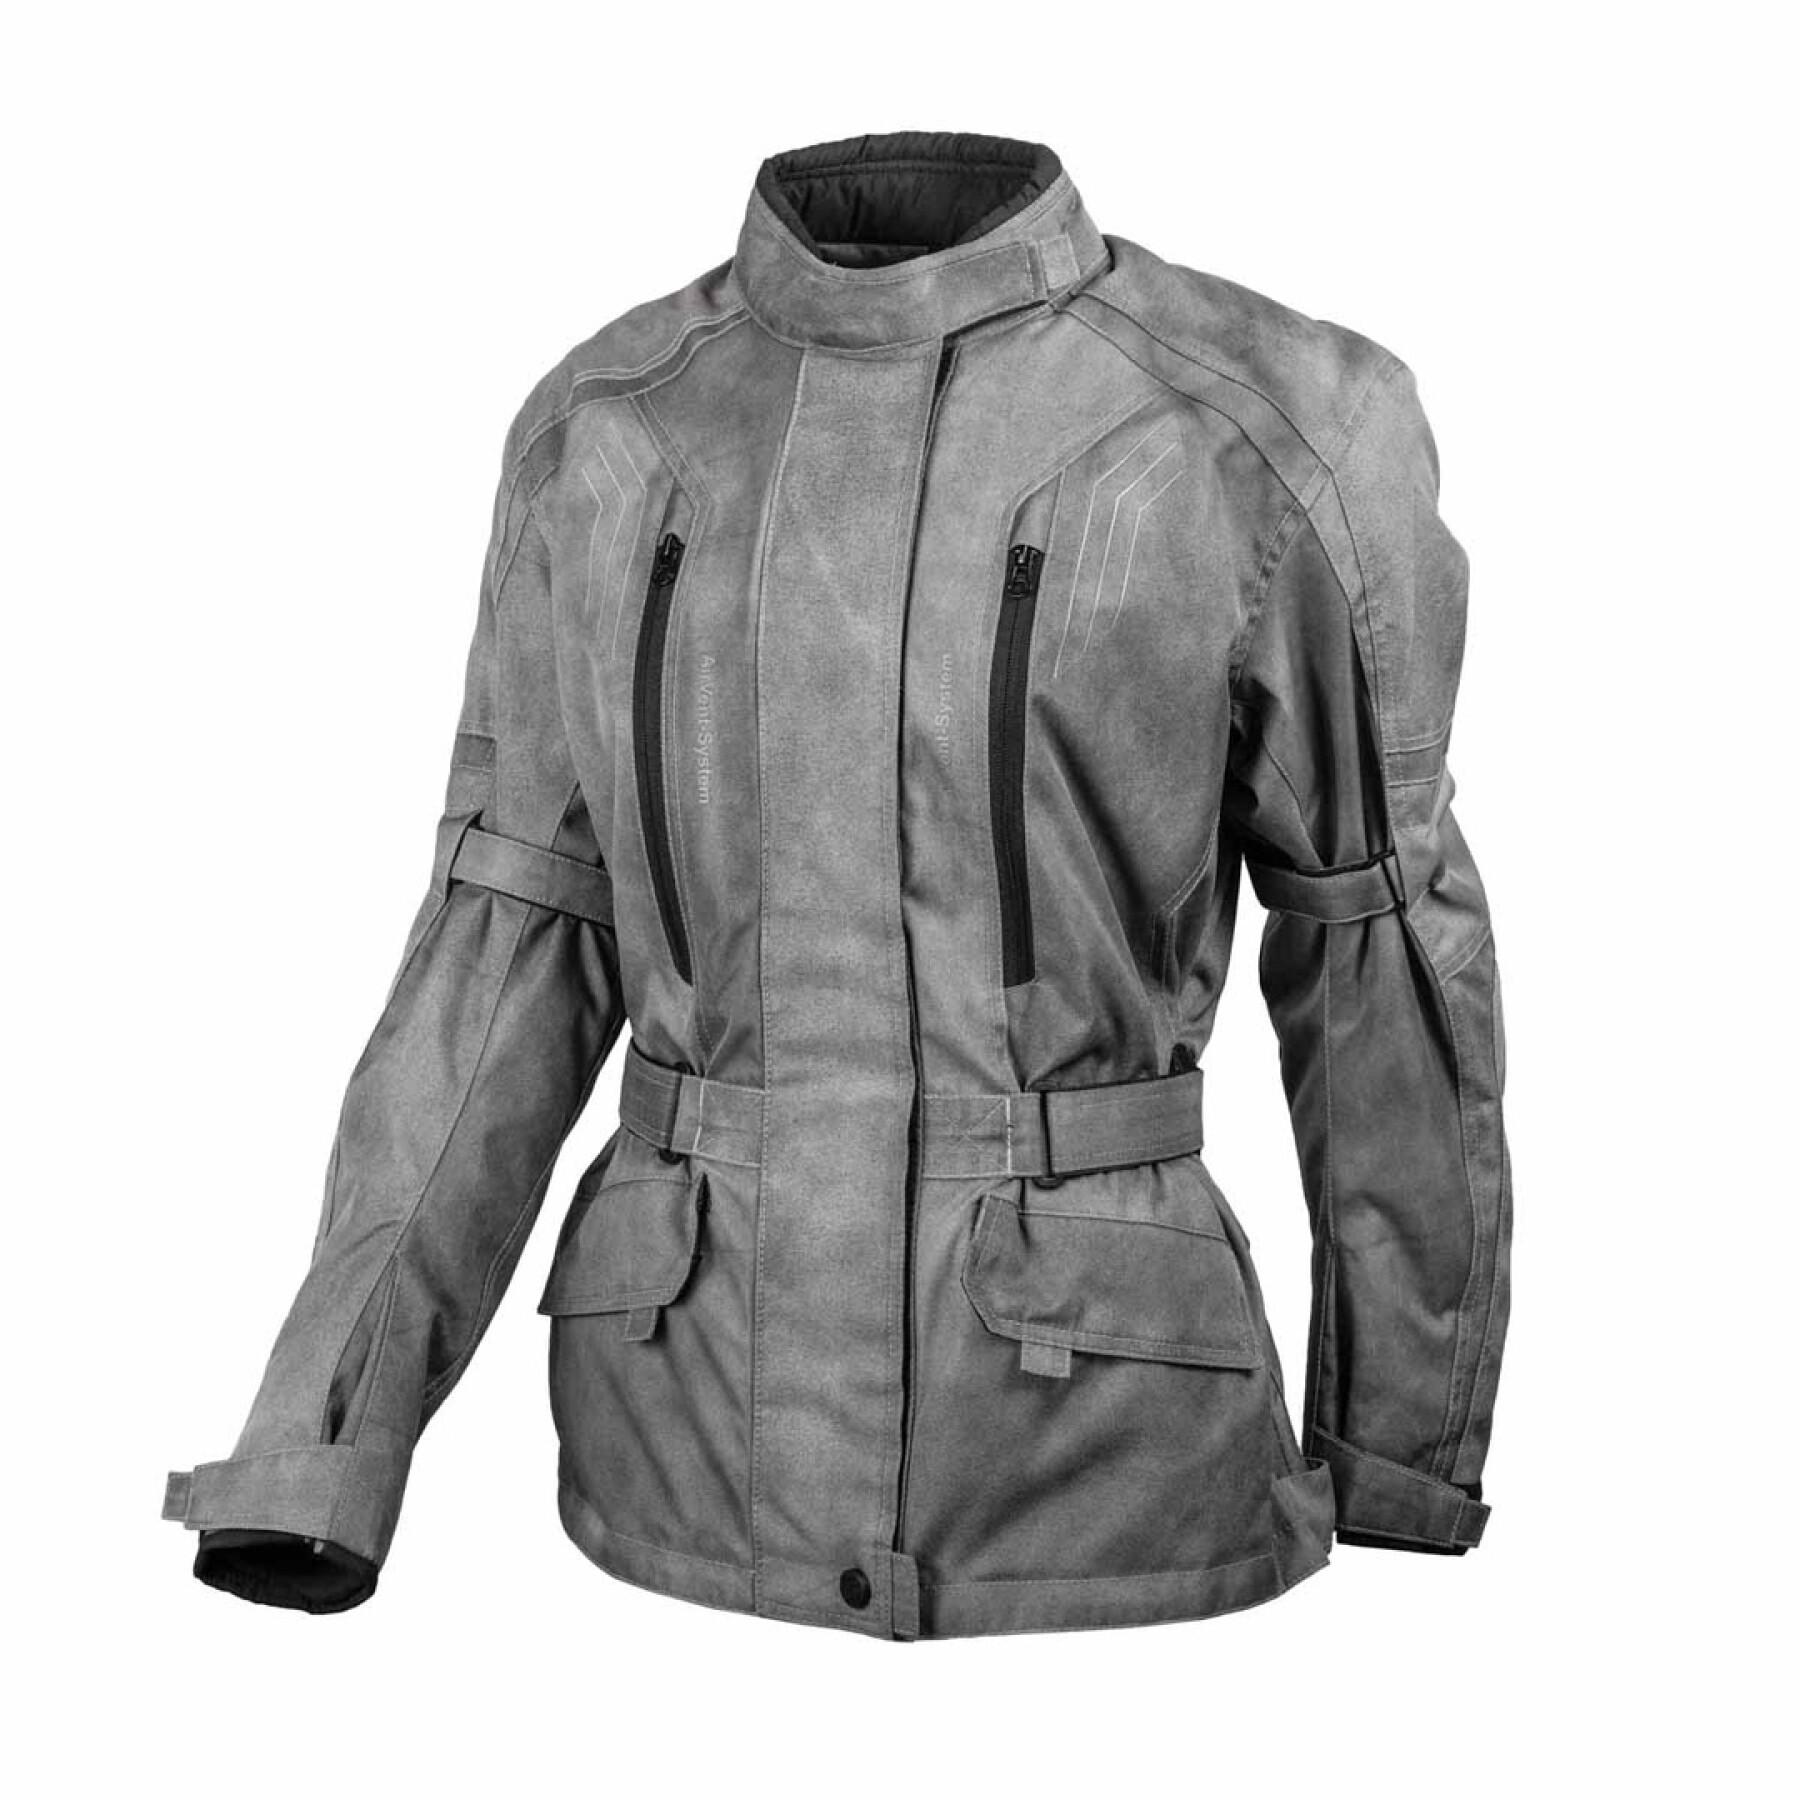 Motorcycle jacket for women GMS dayton